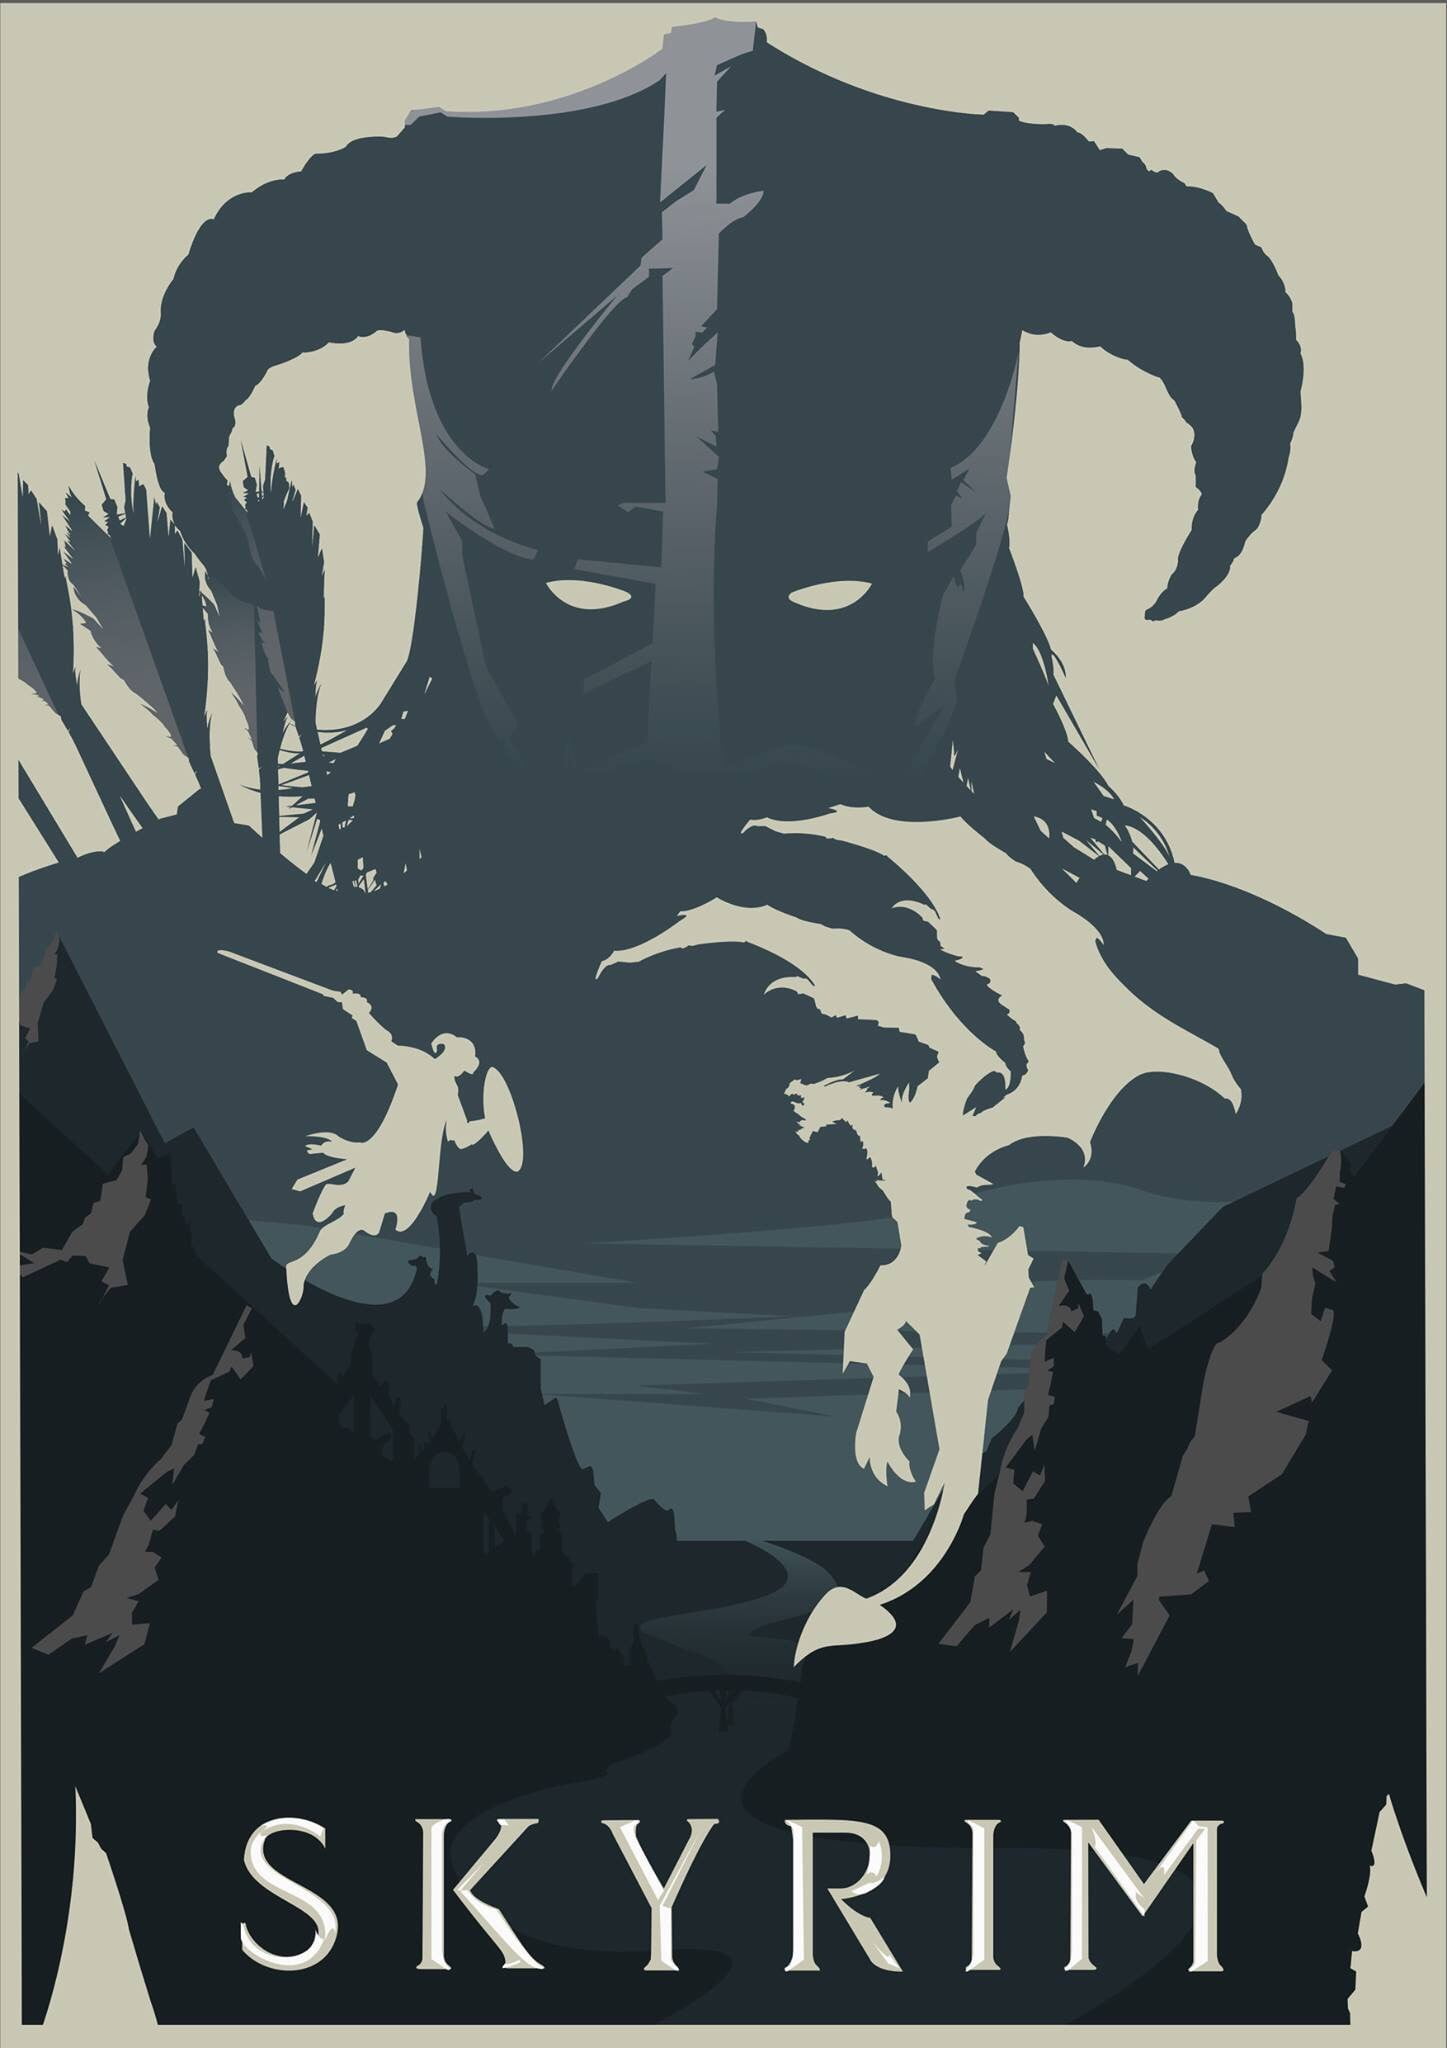 The Elder Scrolls V Skyrim poster, The Elder Scrolls V: Skyrim